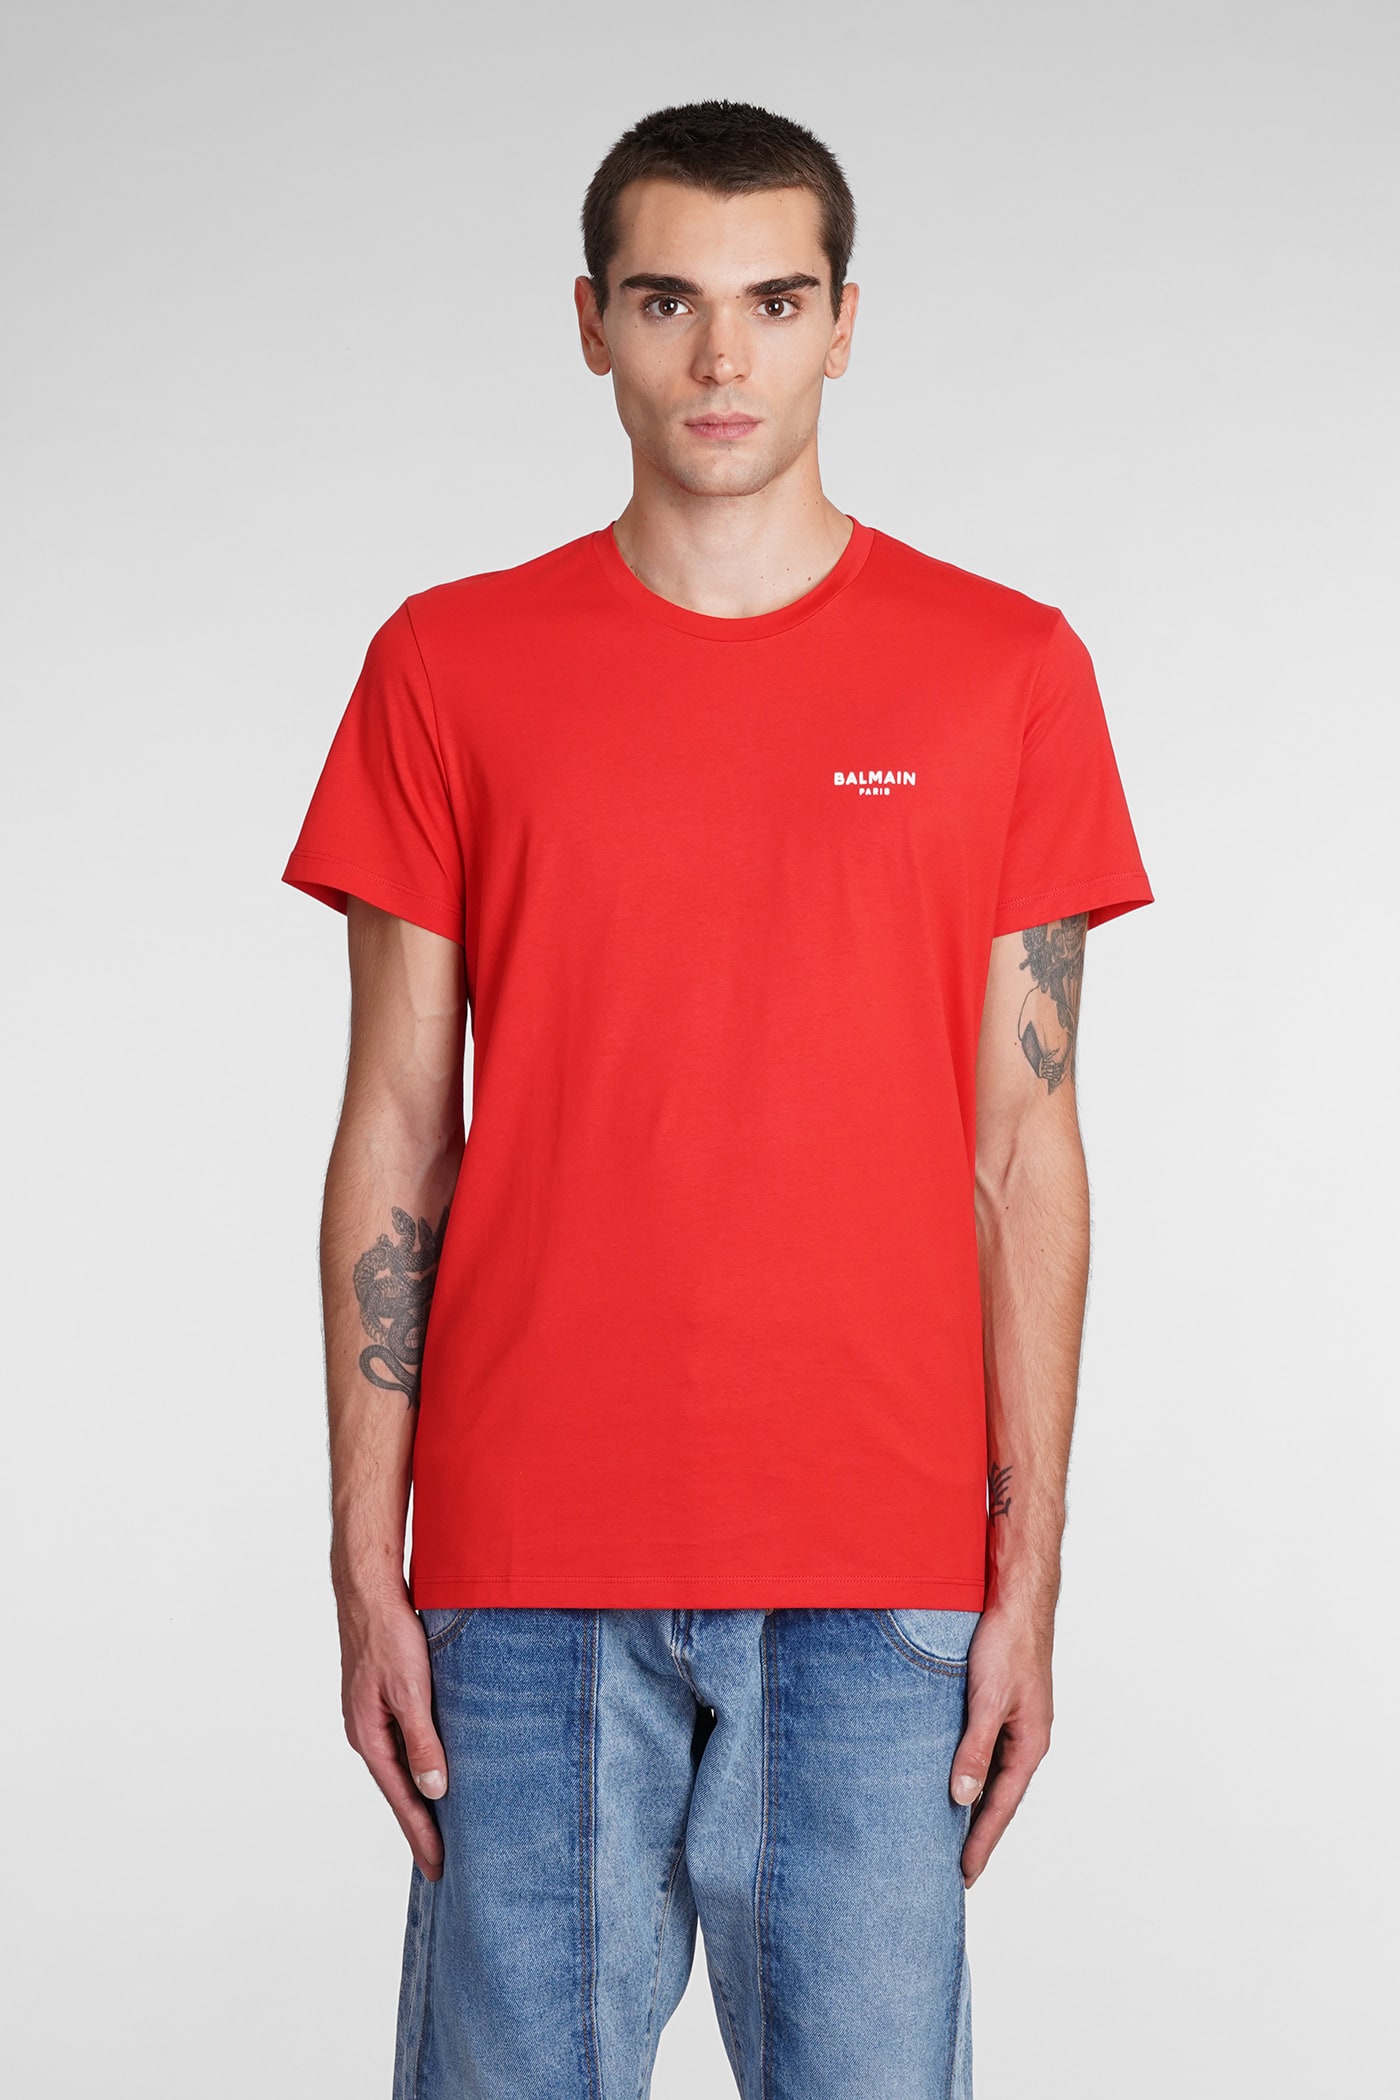 Balmain T-shirt In Red Cotton